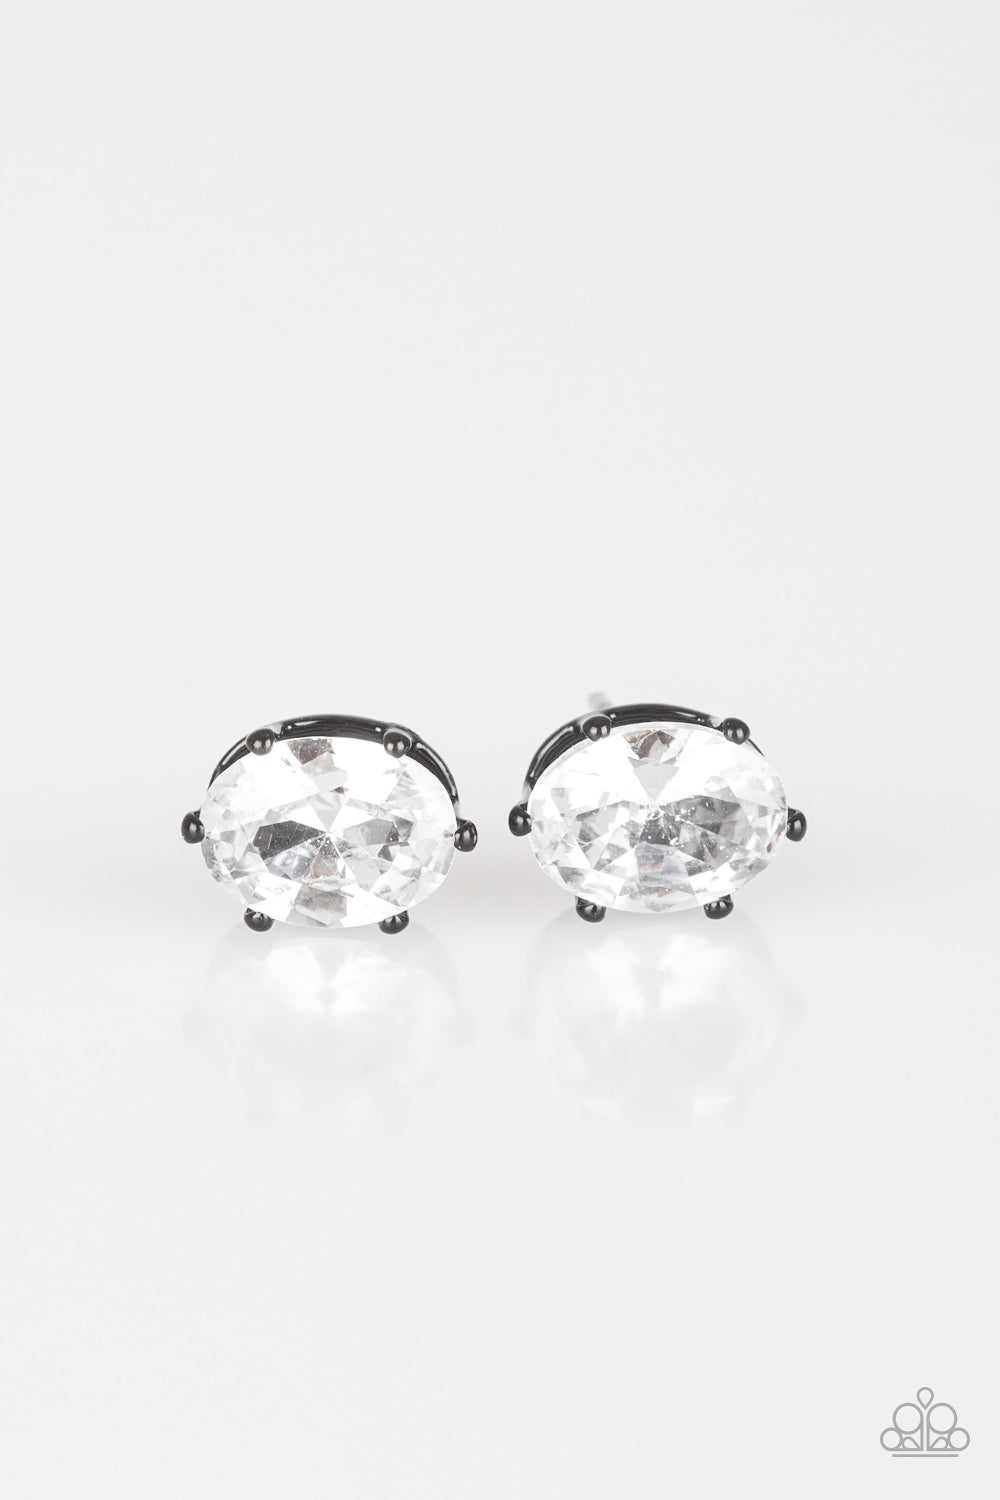 Starlet Shimmer Earring Kit 1 Paparazzi Earrings Cashmere Pink Jewels - Cashmere Pink Jewels & Accessories, Cashmere Pink Jewels & Accessories - Paparazzi